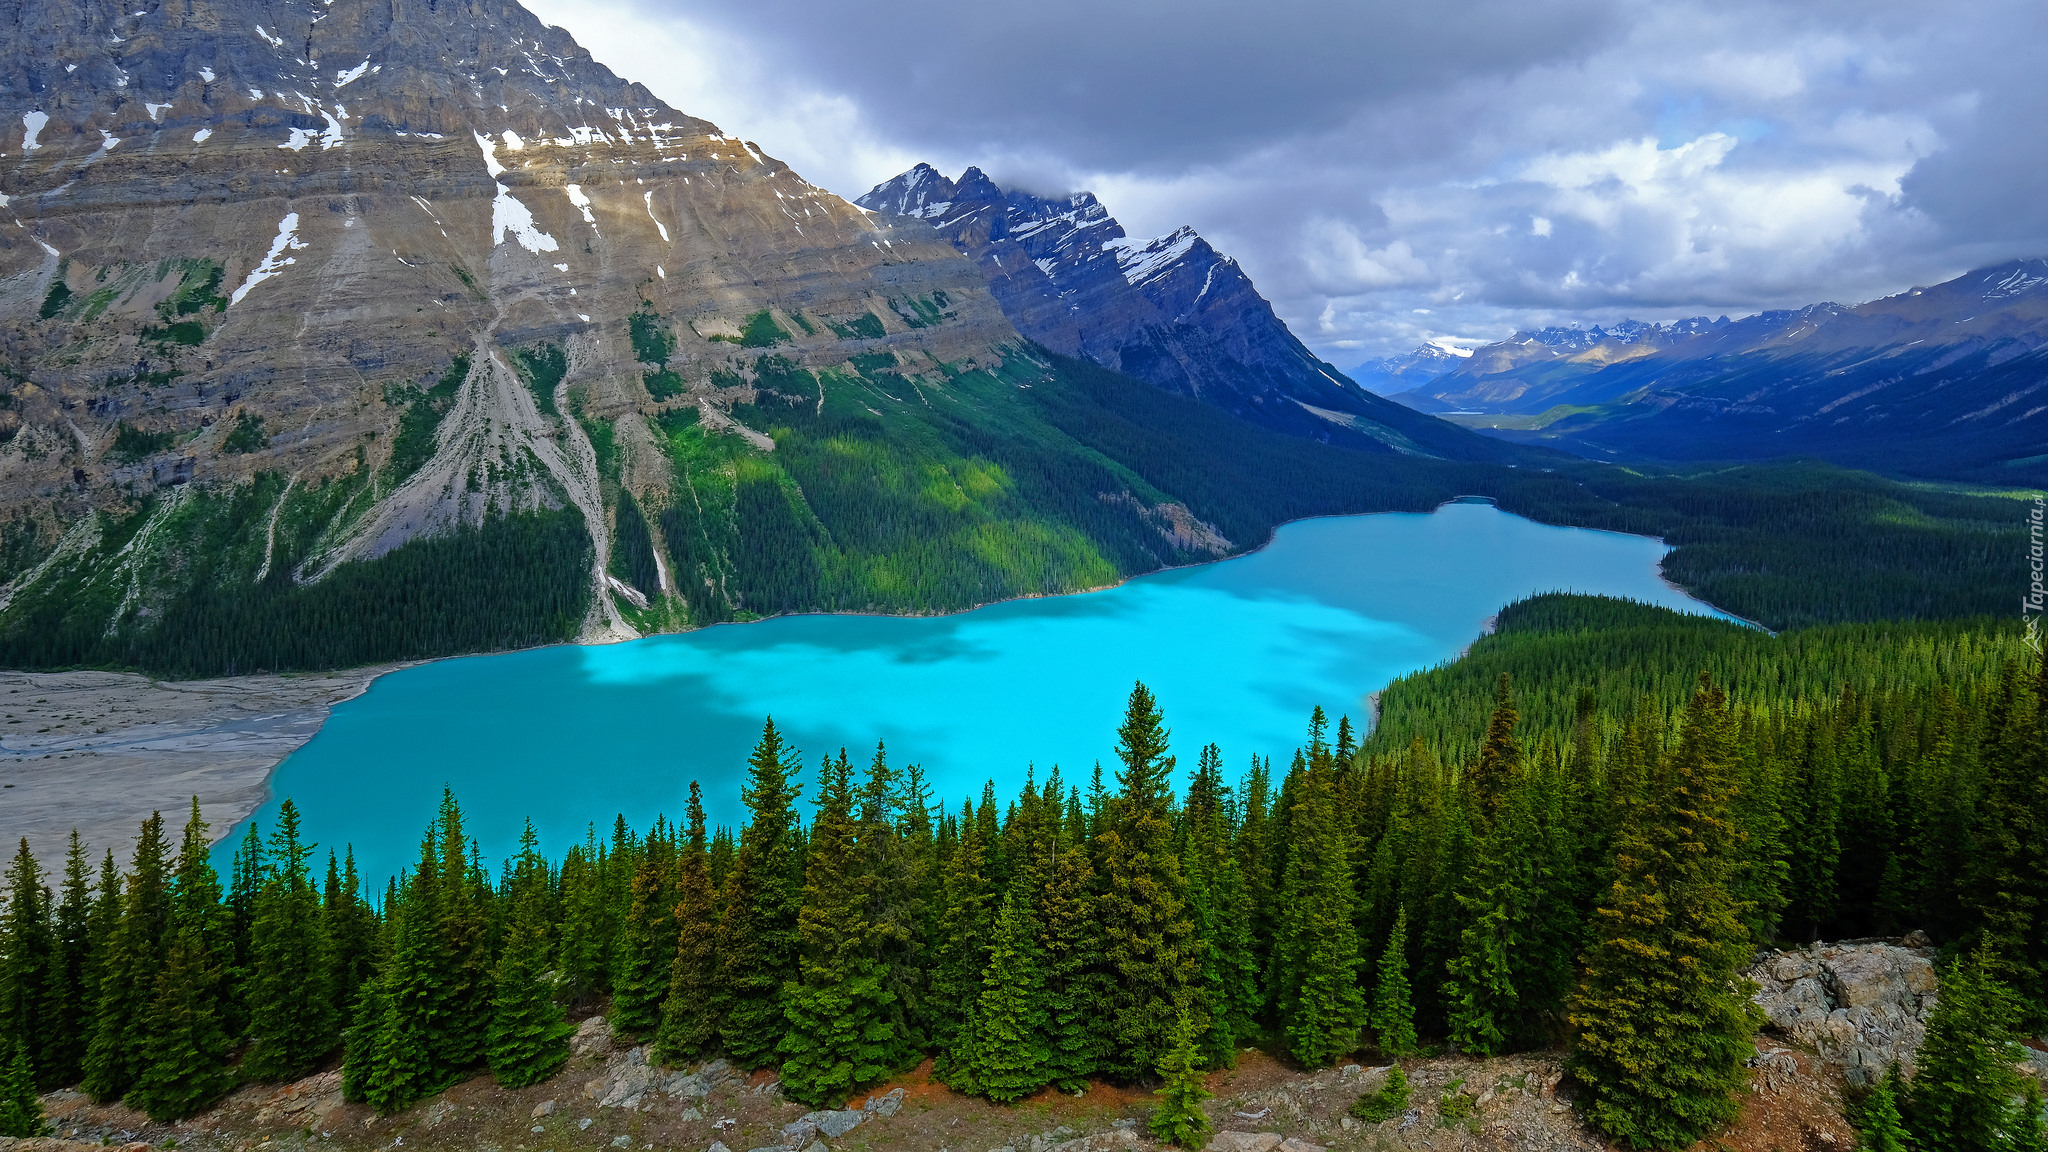 Park Narodowy Banff, Jezioro, Peyto Lake, Drzewa, Lasy, Skały, Góry, Chmury, Prowincja Alberta, Kanada